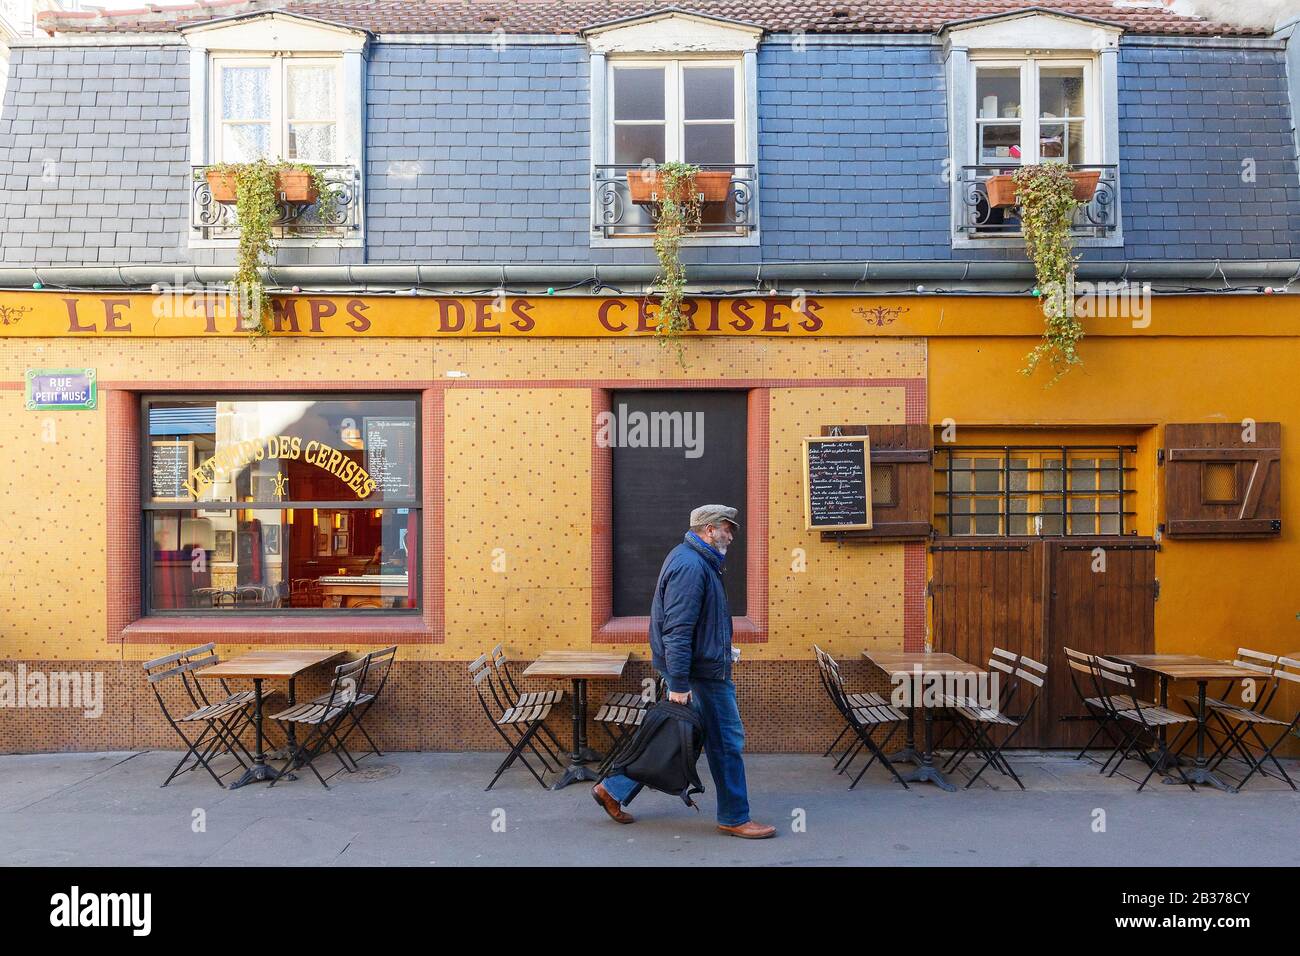 France, Paris, restaurant Le Temps des Cerises in rue de la Cerisaie Stock Photo